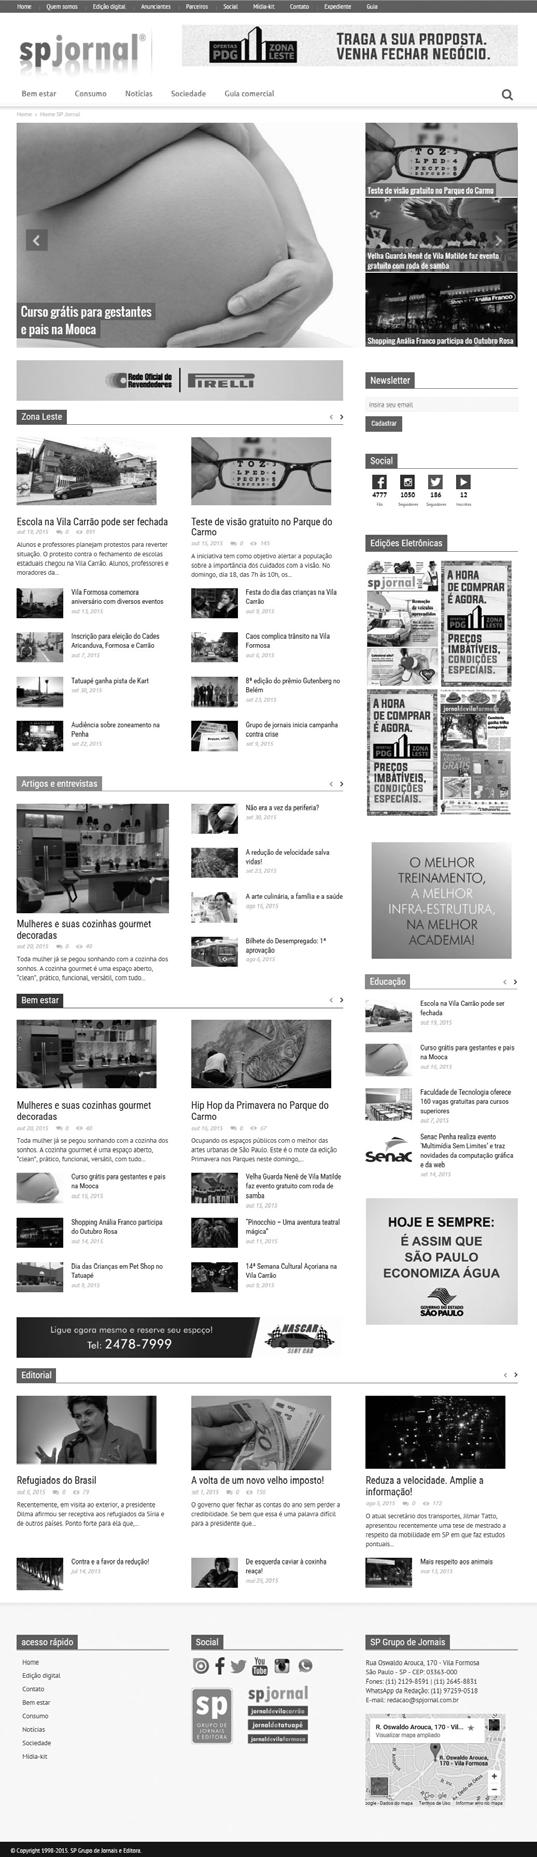 FORMATOS Portal BANNER SUPERIOR Exibido em todas as páginas Tamanho: 728 X 90 pixels Arquivo: flash, vídeo, jpeg e gif.